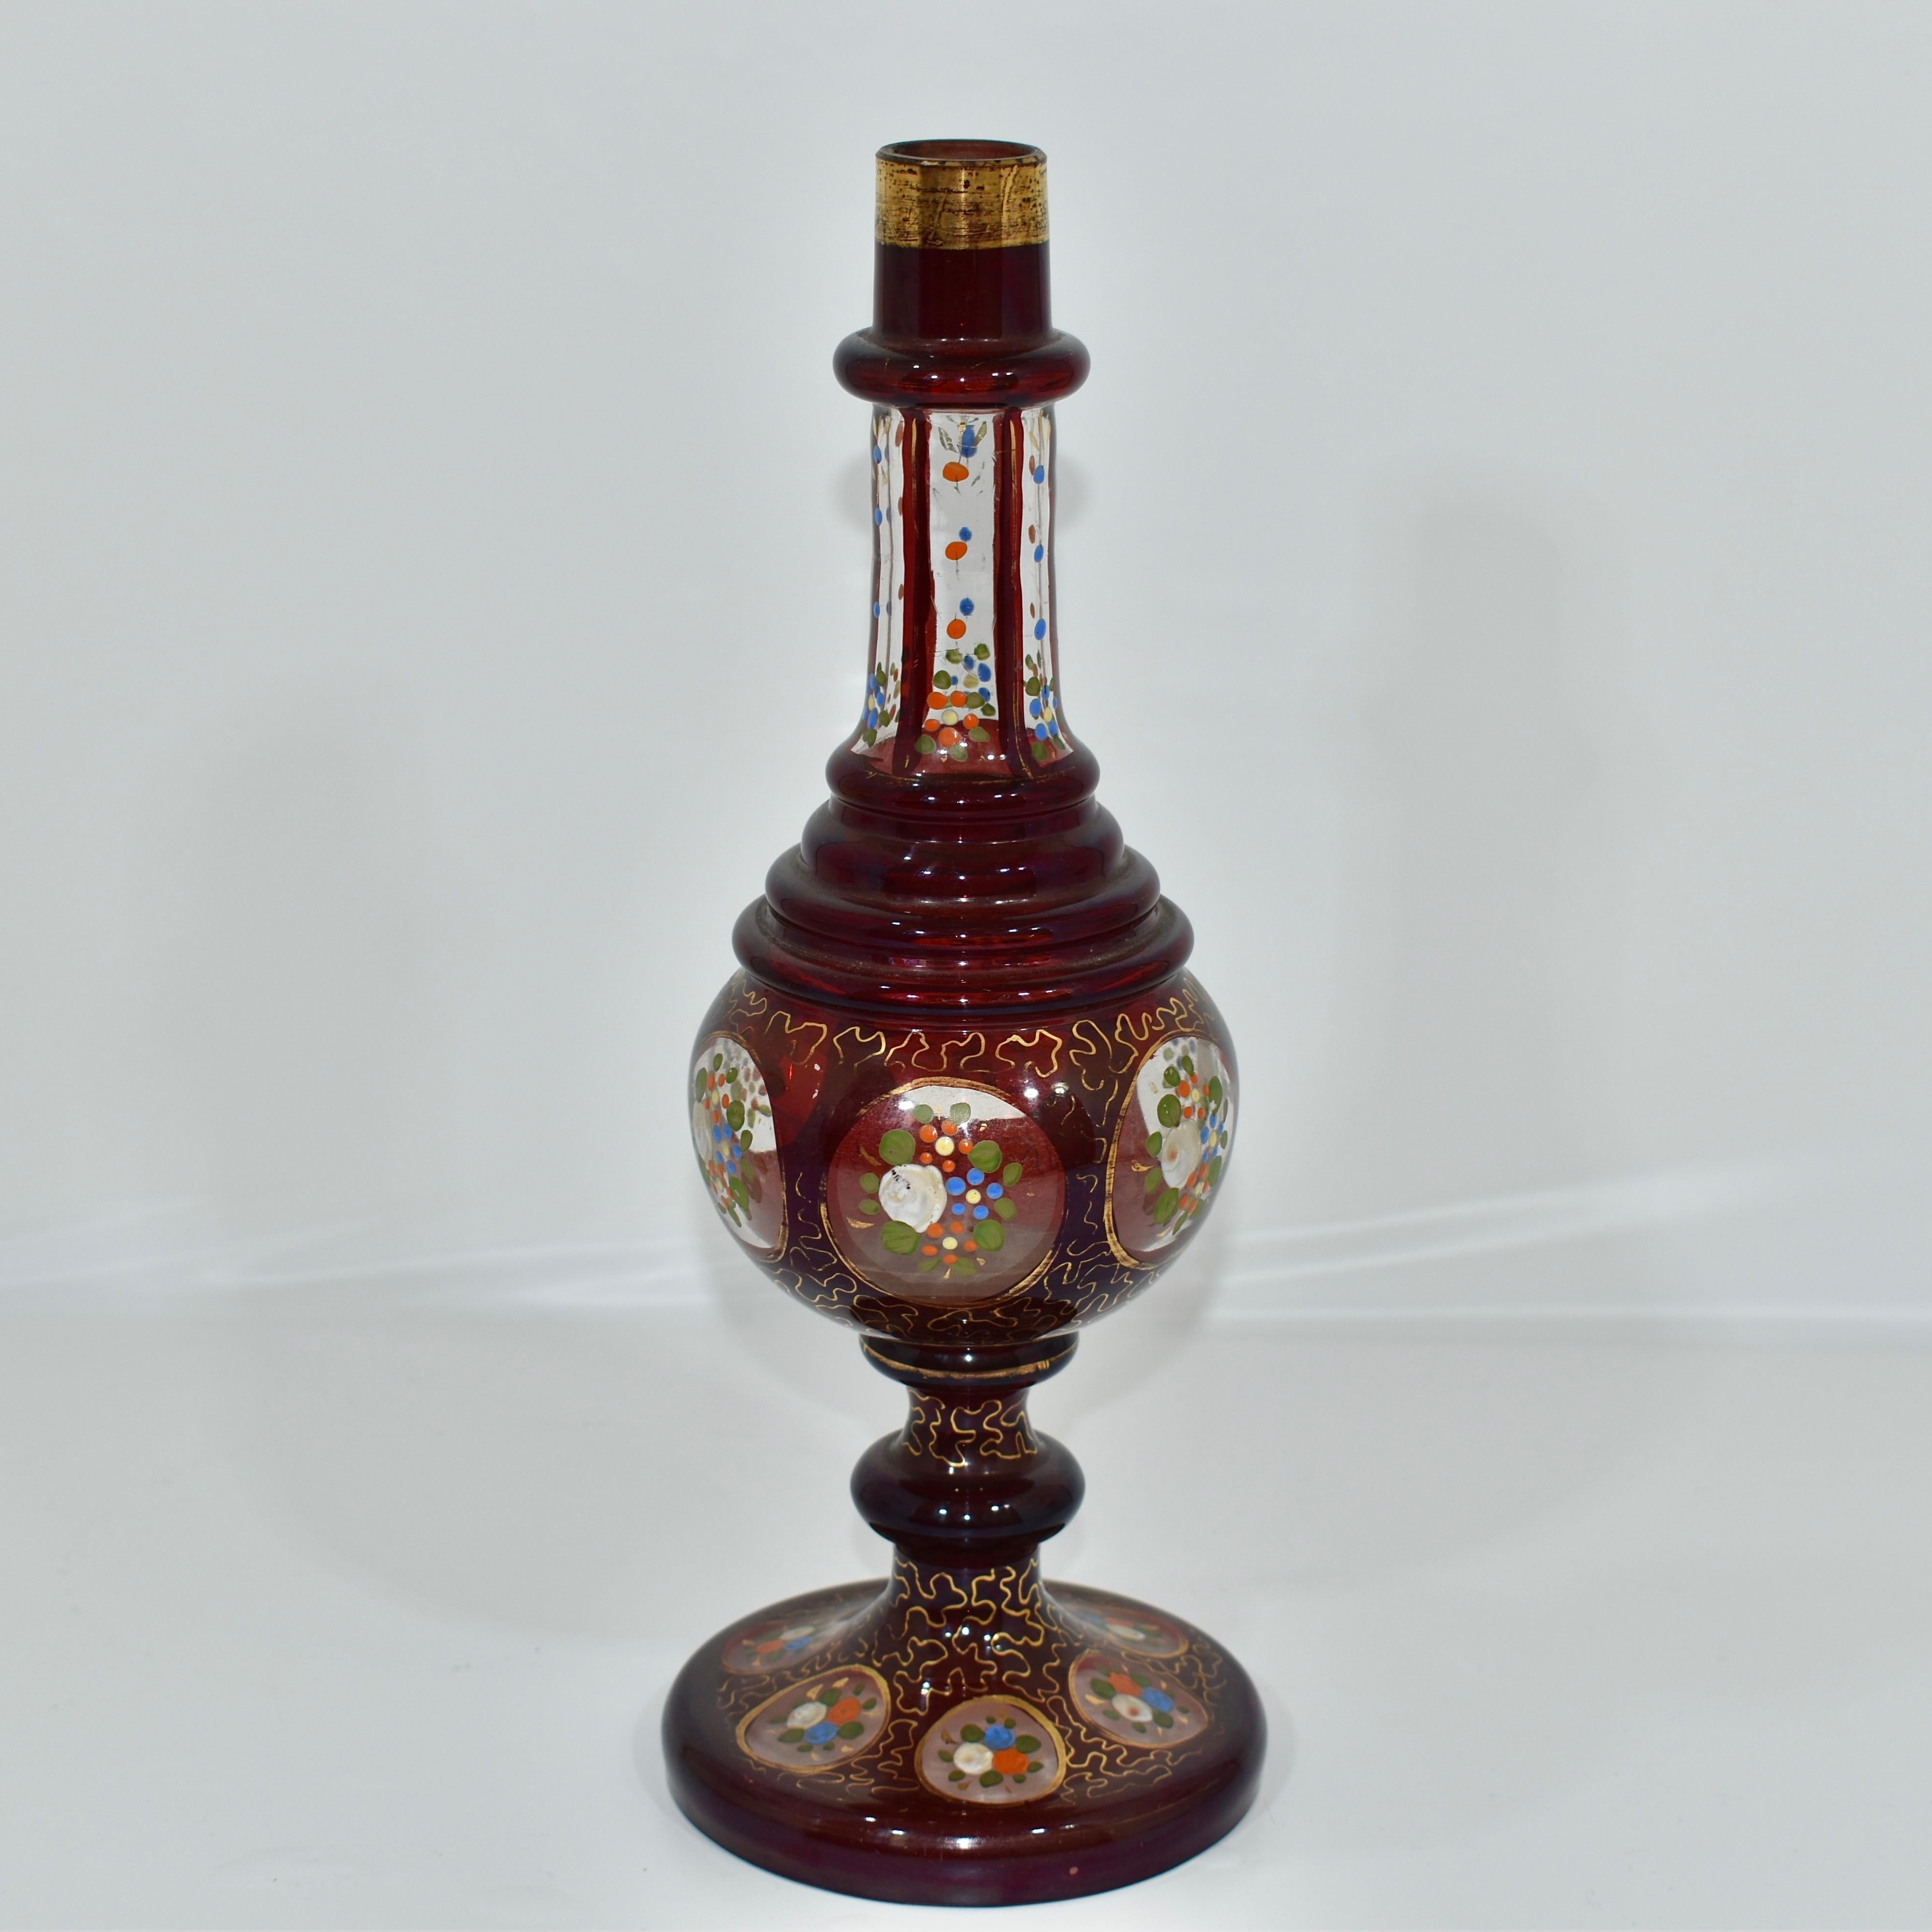 Arroseur d'eau rose en verre clair et rubis ancien

Décorée d'émaux colorés et de dorures.

Bel exemple de verre de Bohême de haute qualité fabriqué pour le marché islamique au XIXe siècle.